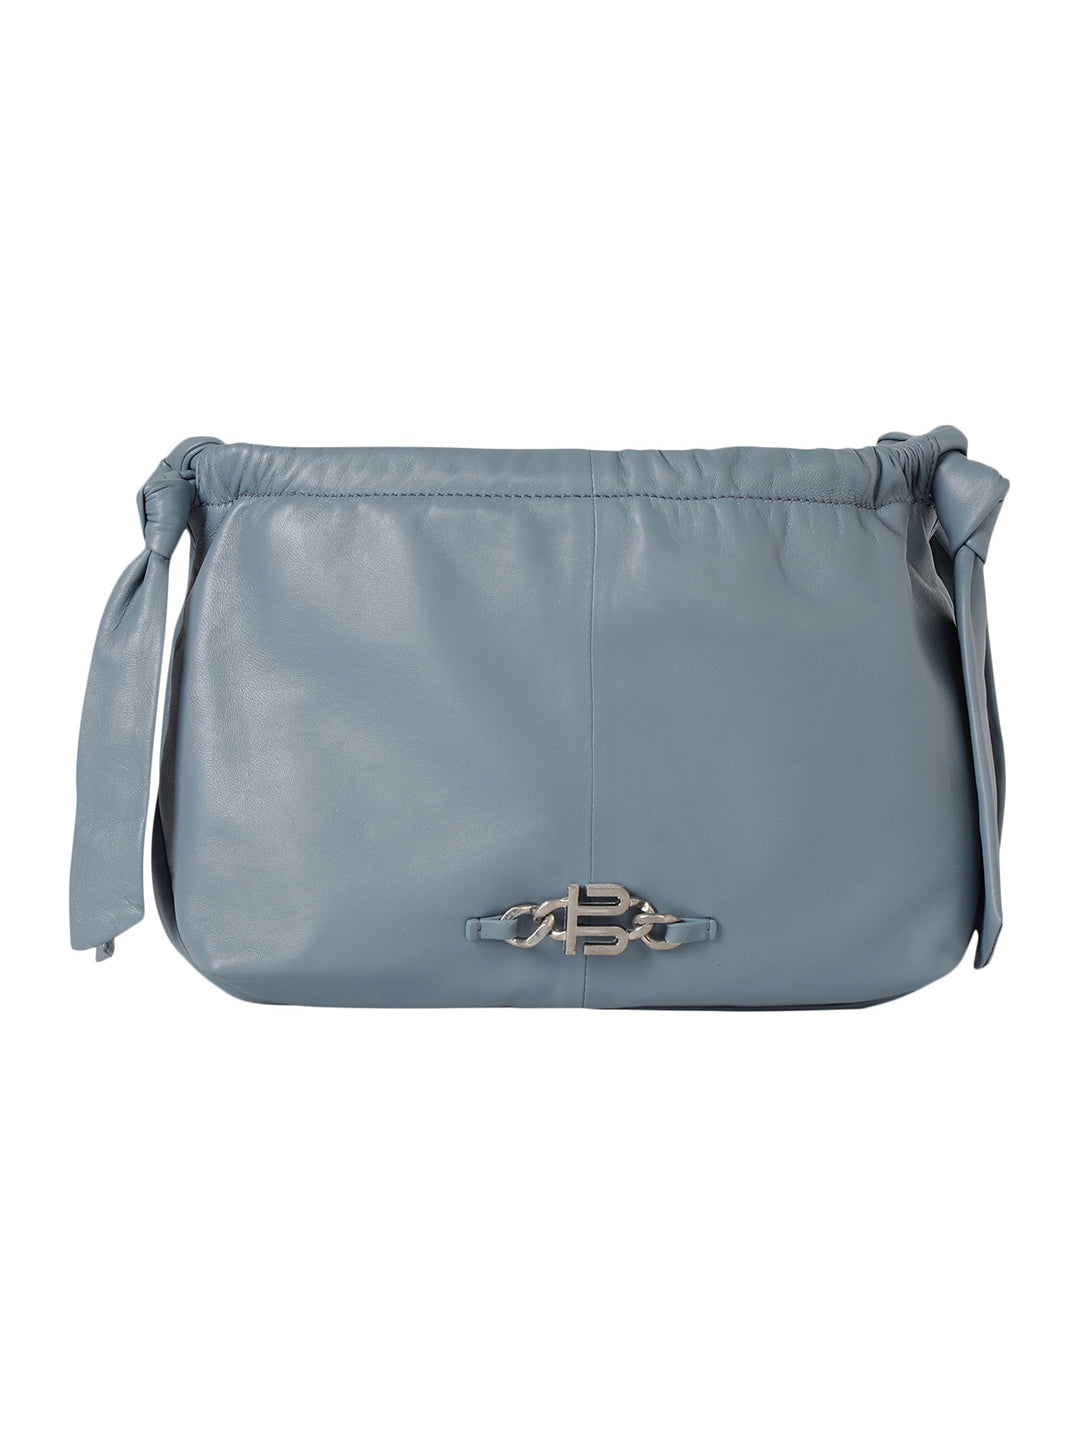 Solza Blue Leather Knotted Shoulder Bag